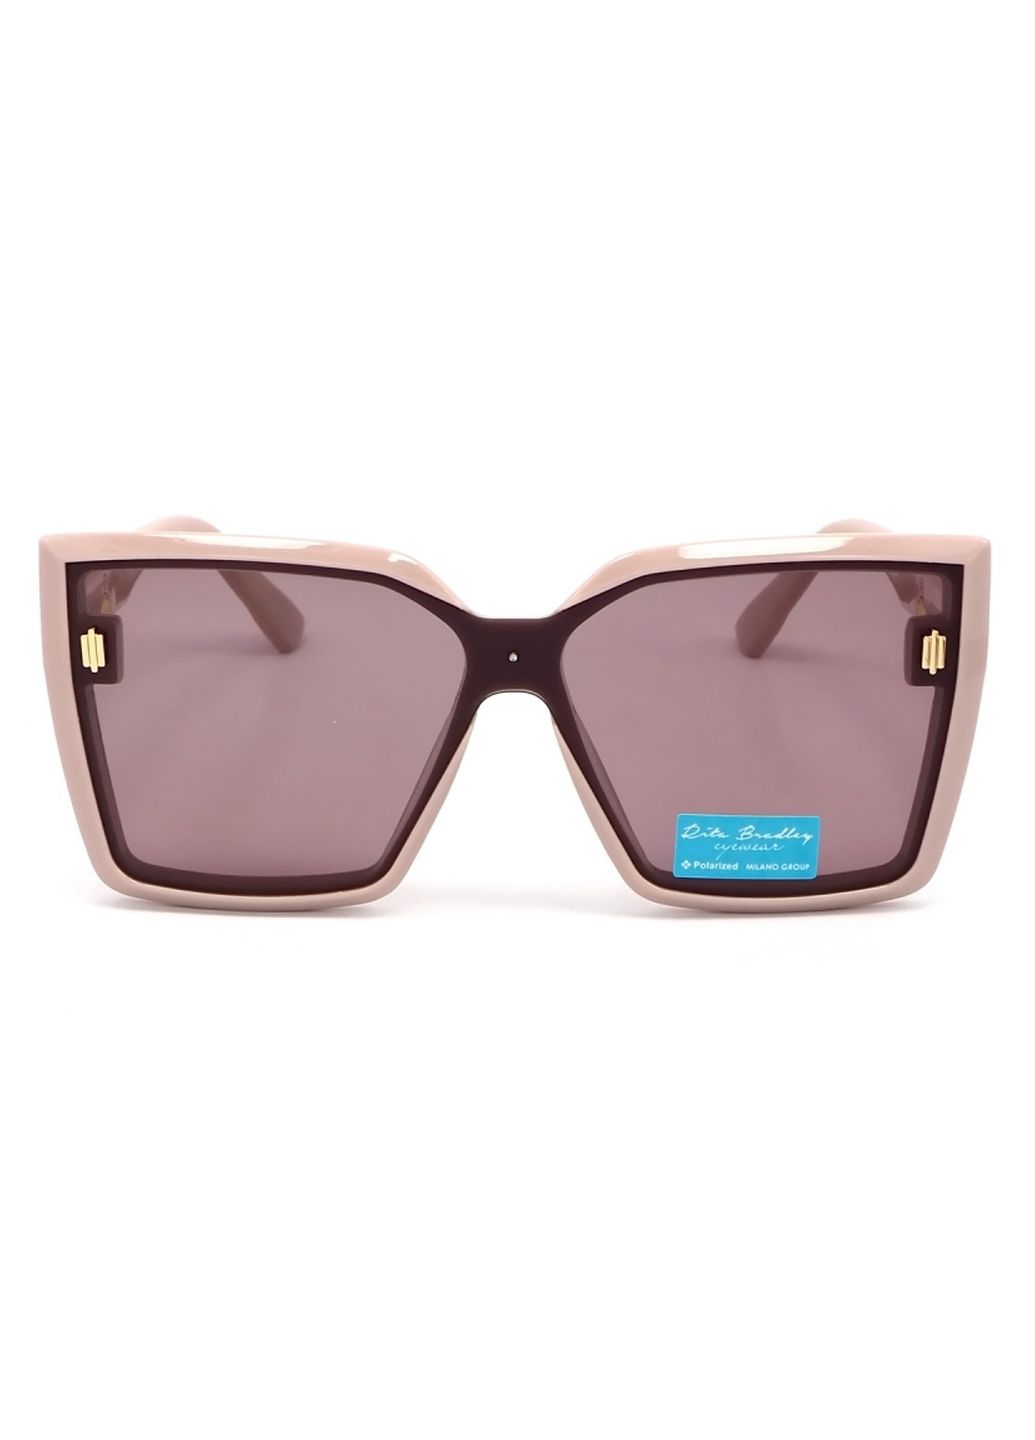 Купить Женские солнцезащитные очки Rita Bradley с поляризацией RB728 112066 в интернет-магазине